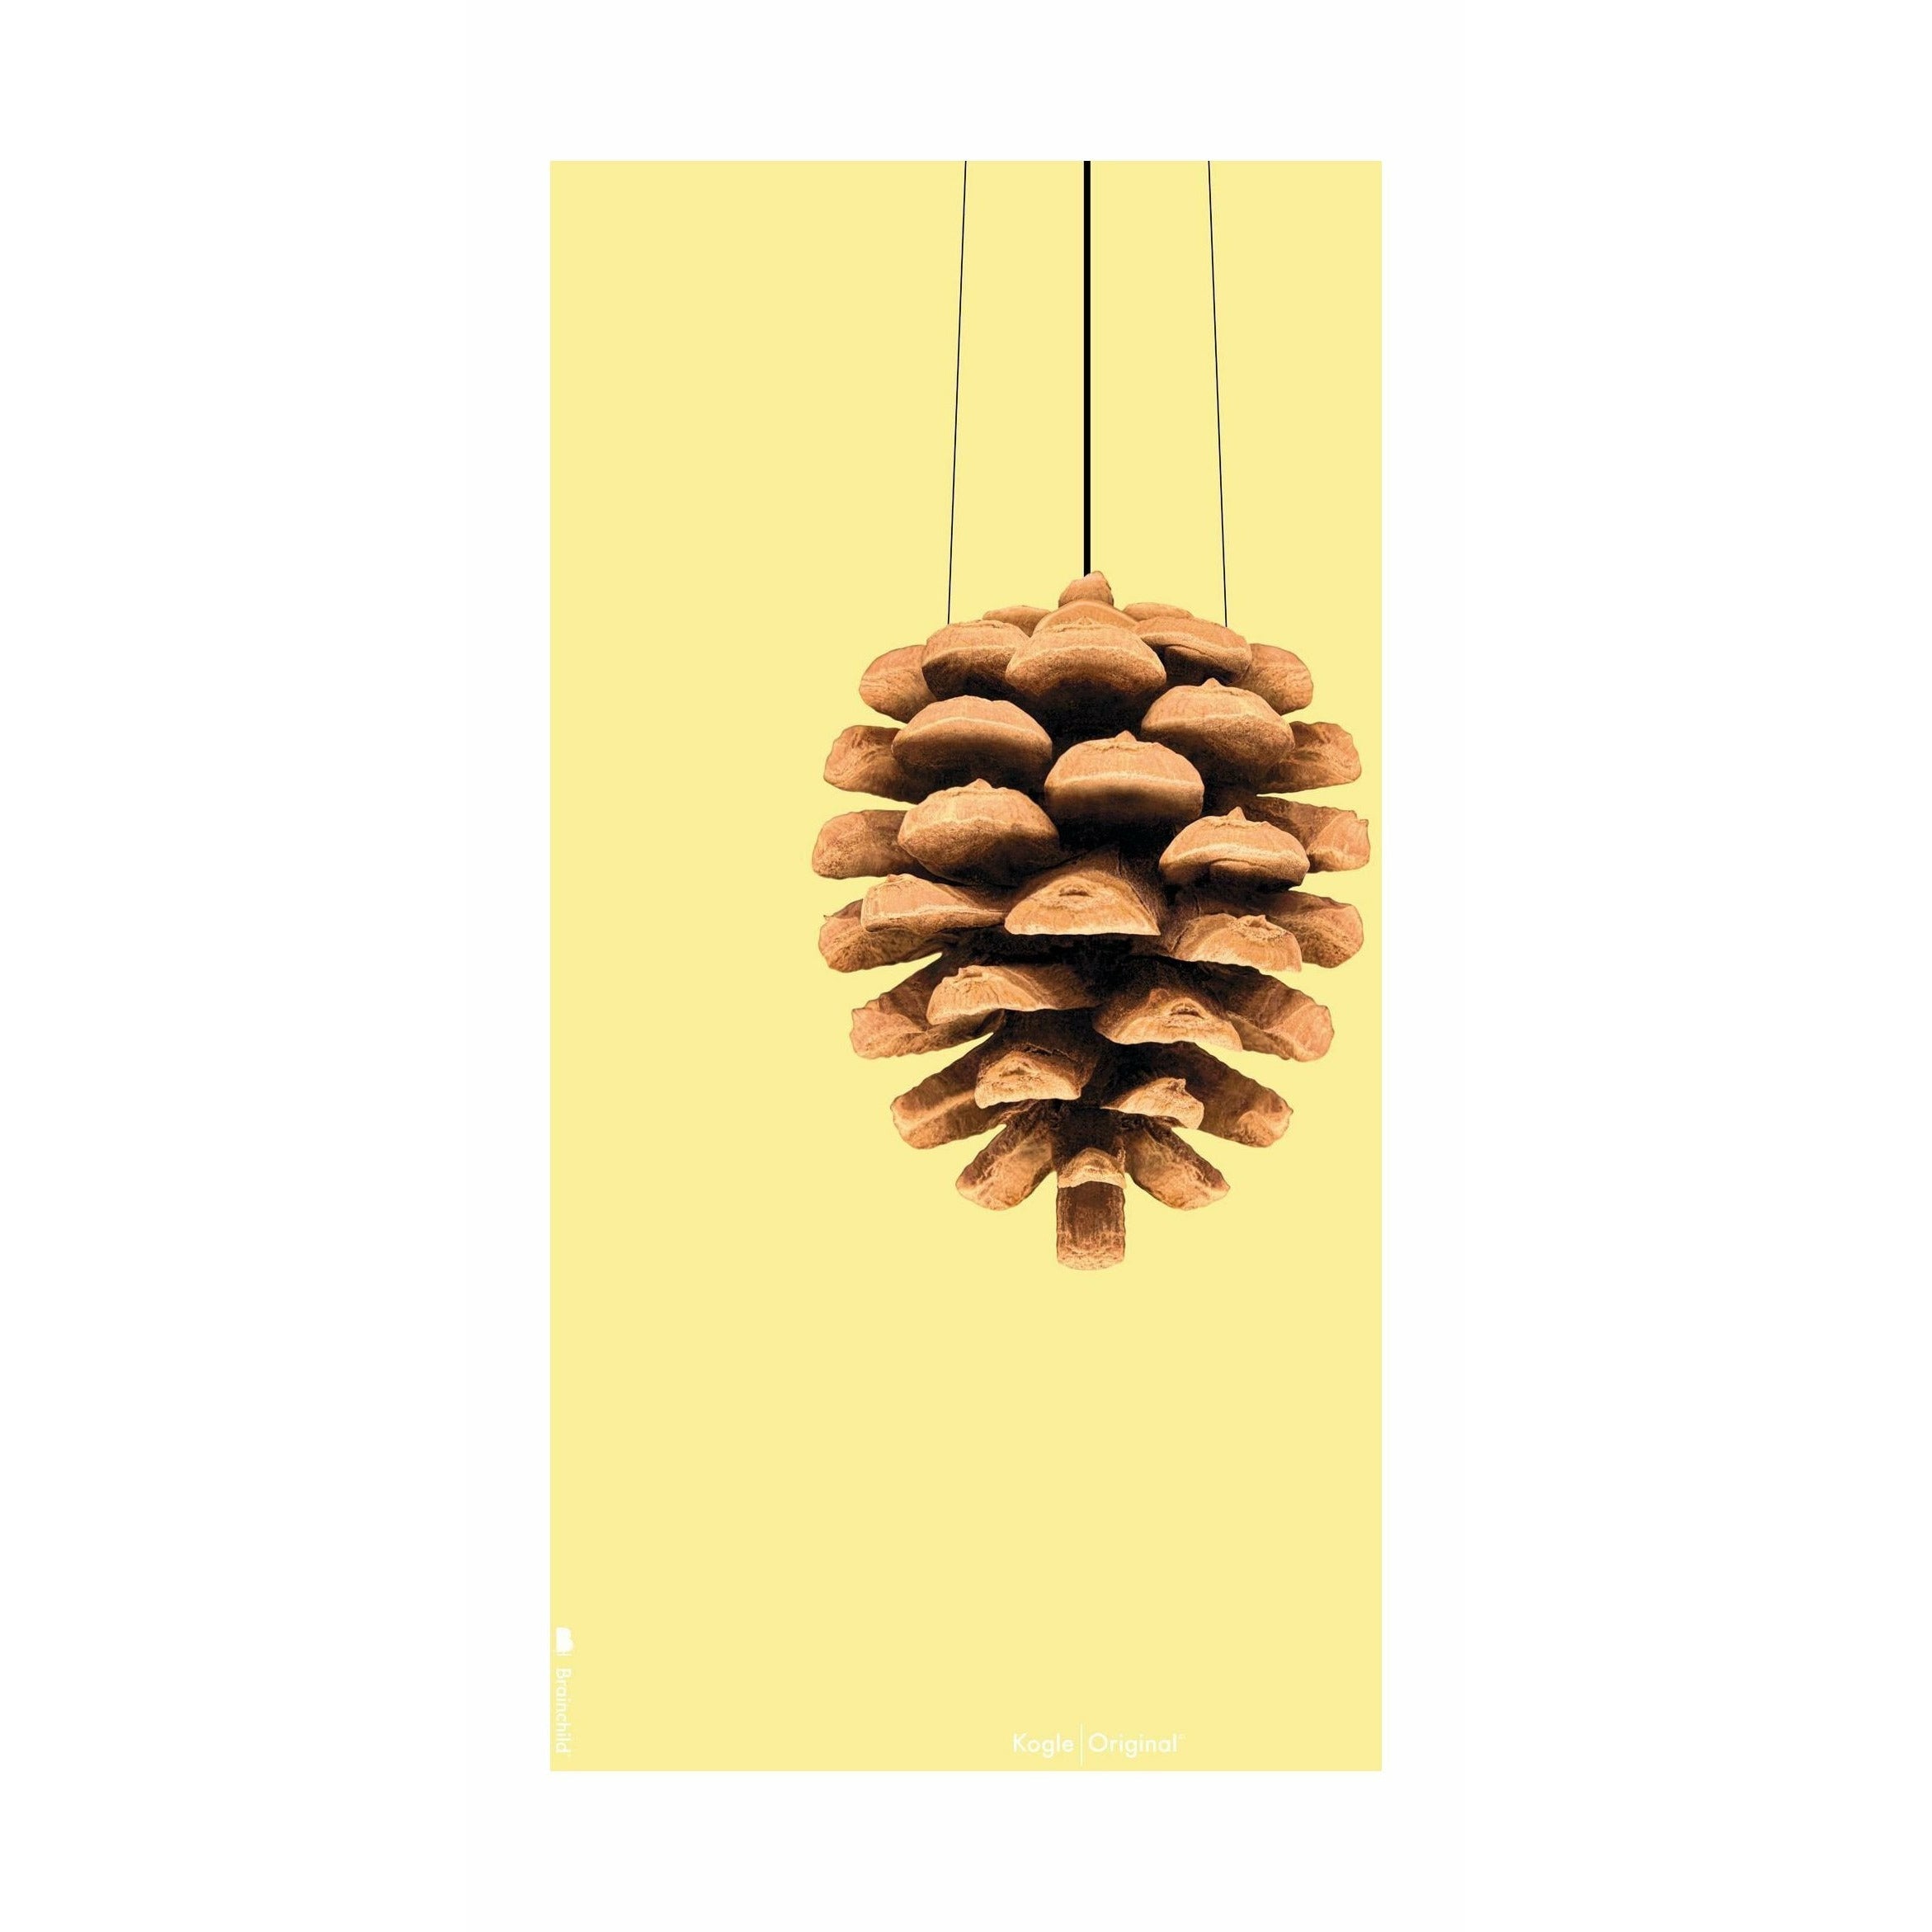 brainchild Pine Cone Classic Poster zonder frame 30 x40 cm, gele achtergrond